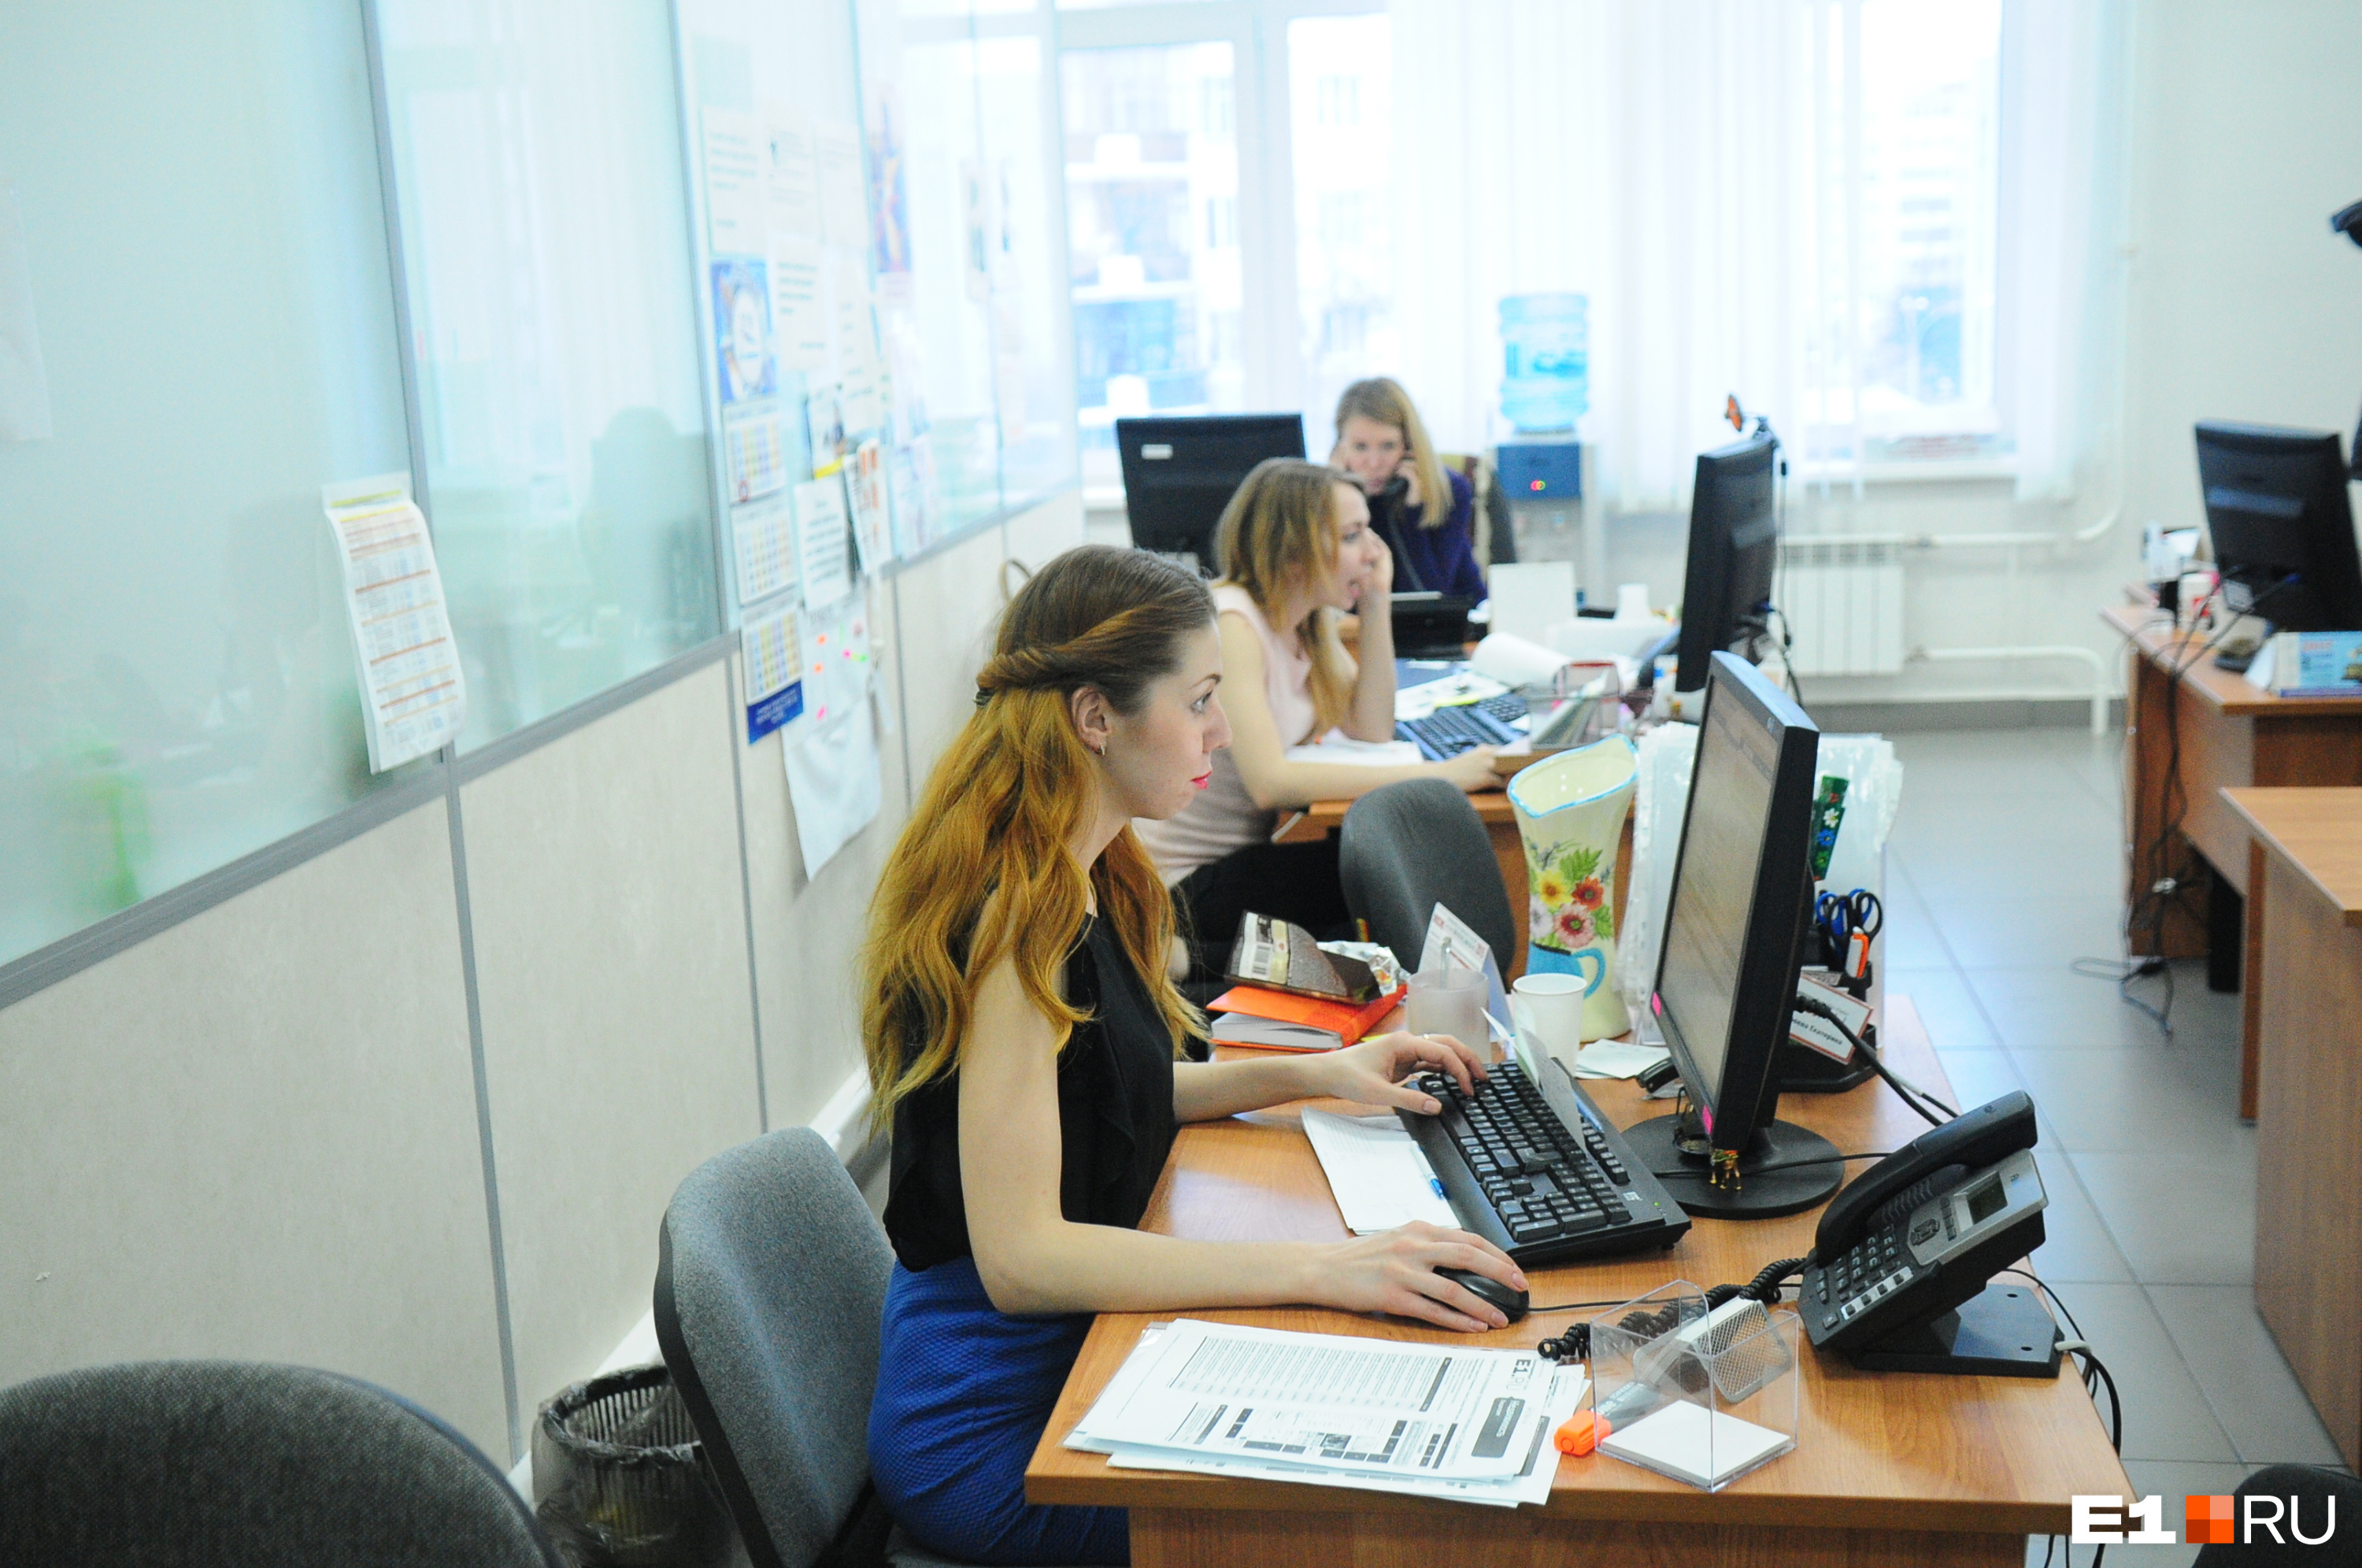 В Екатеринбурге срочно ищут специалиста для работы за границей. Обещают платить до 3 тысяч долларов